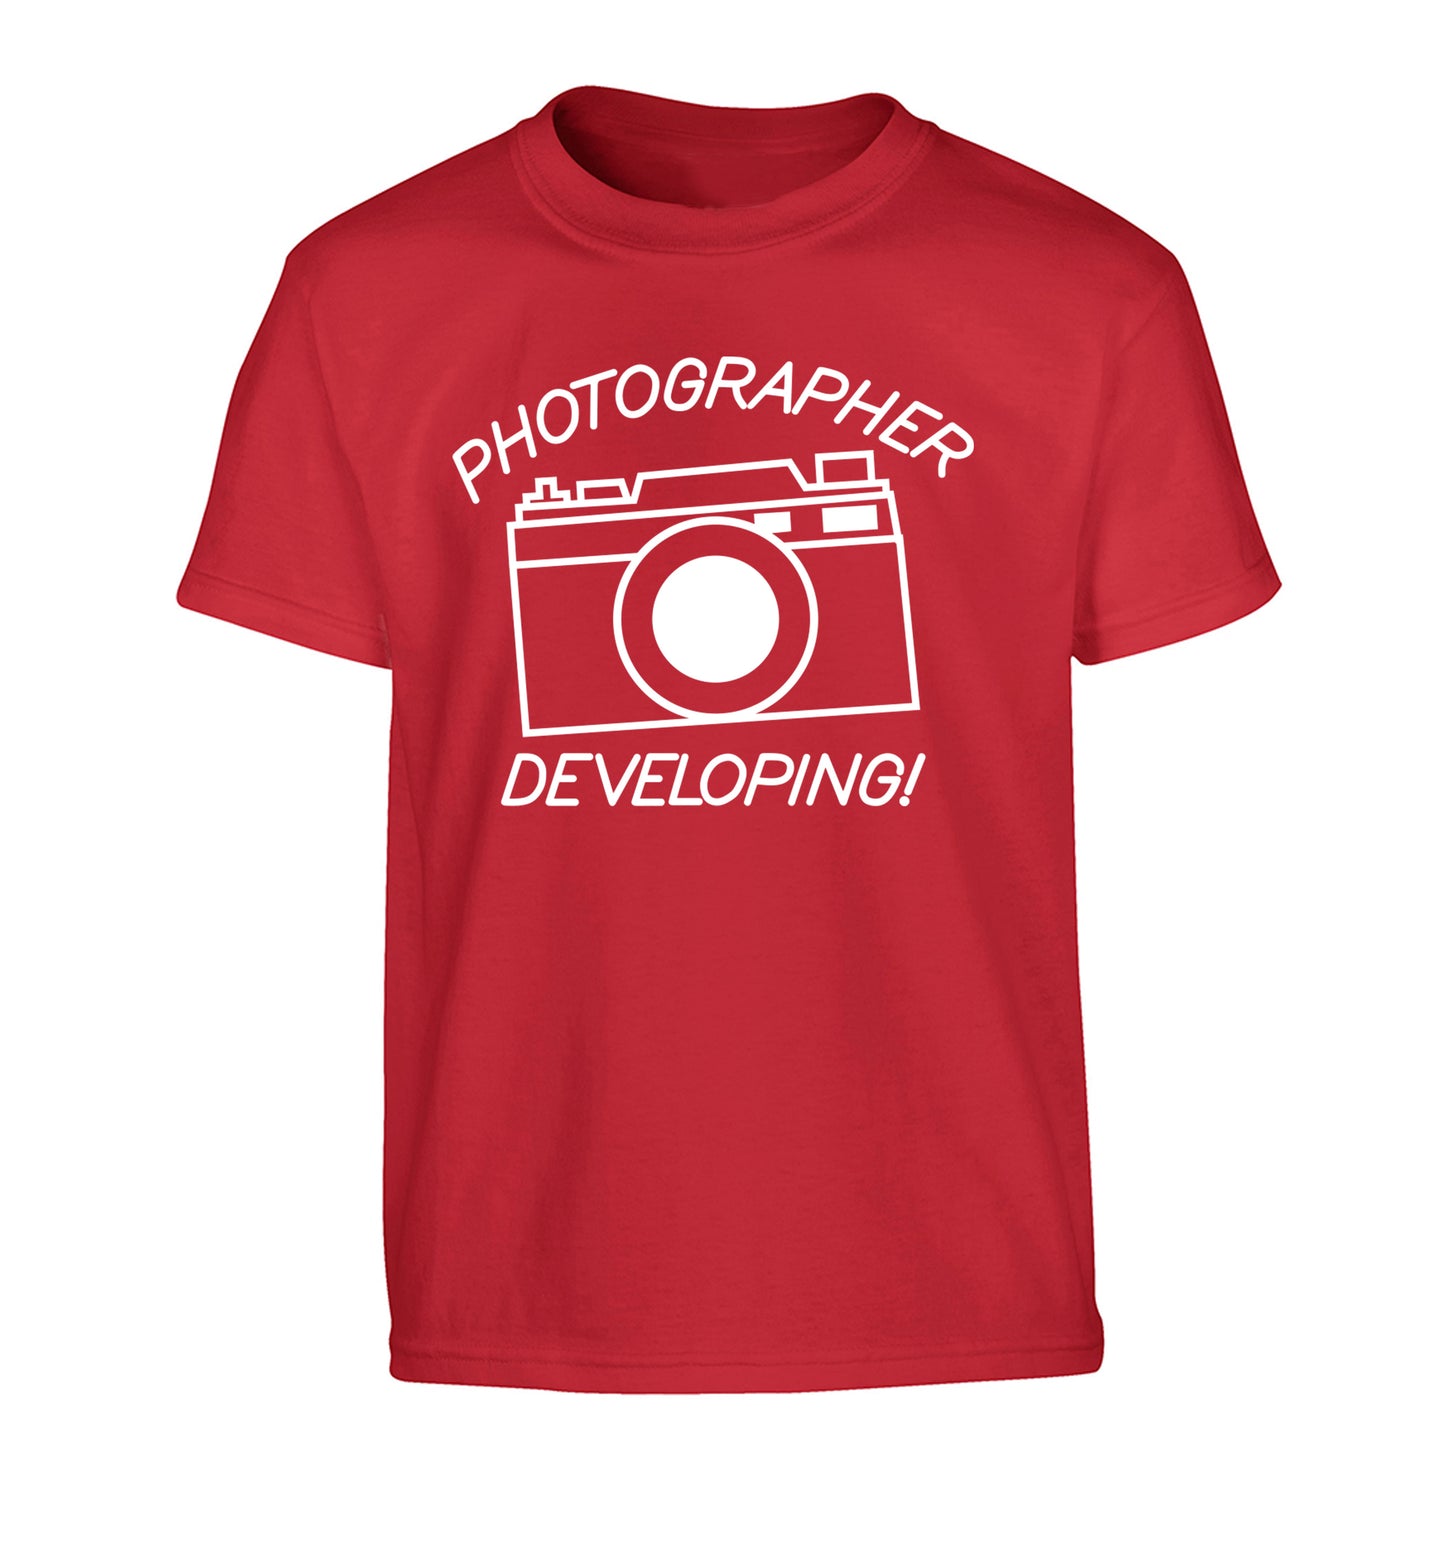 Photographer Developing  Children's red Tshirt 12-13 Years